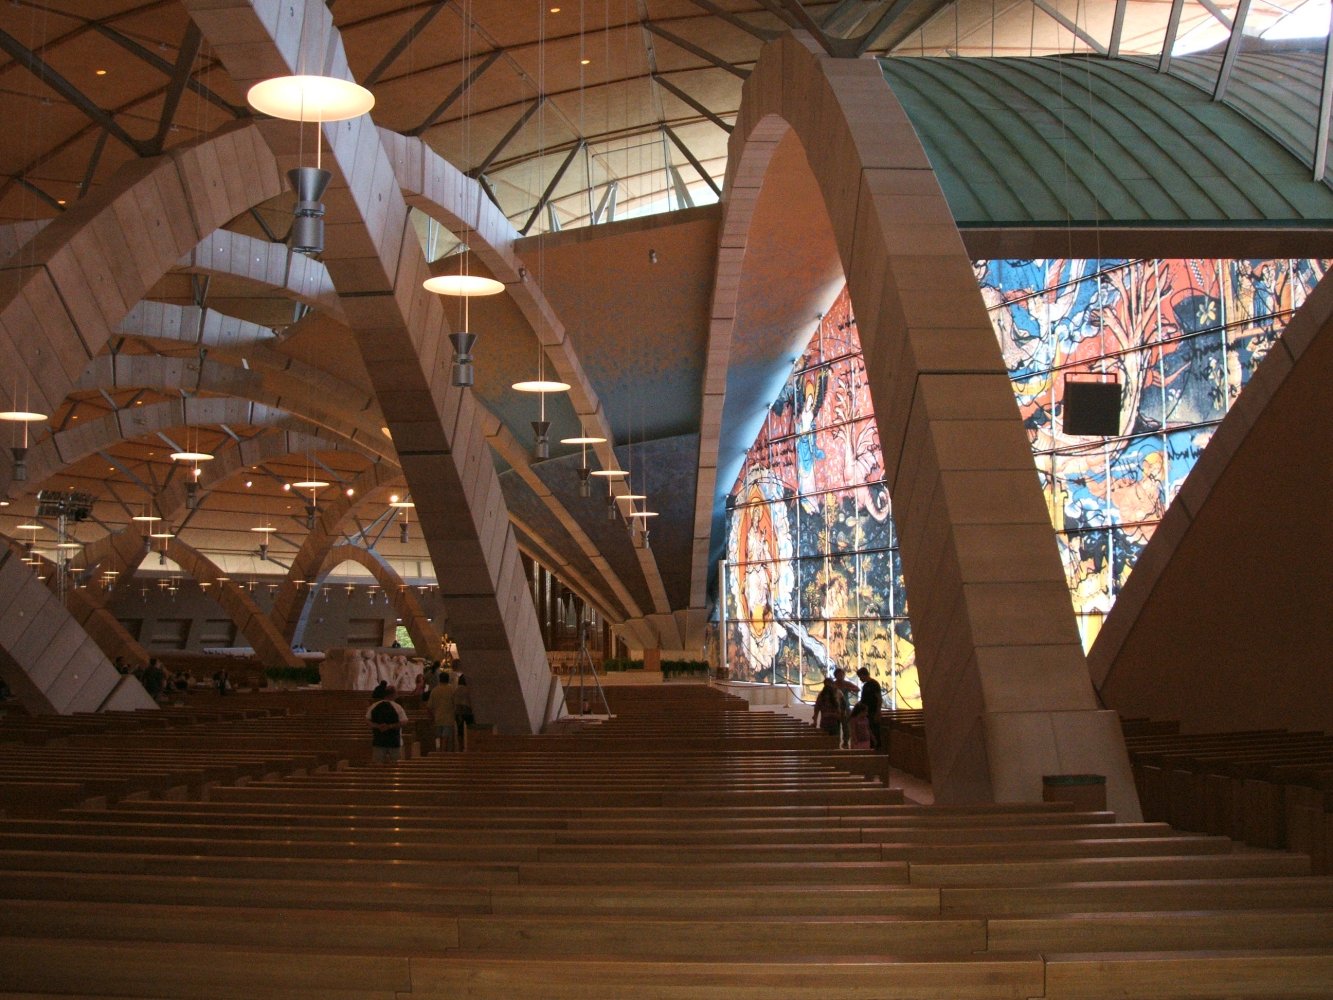 Die neue Kirche, gebaut nach Entwürfen des Architekten Renzo Piano